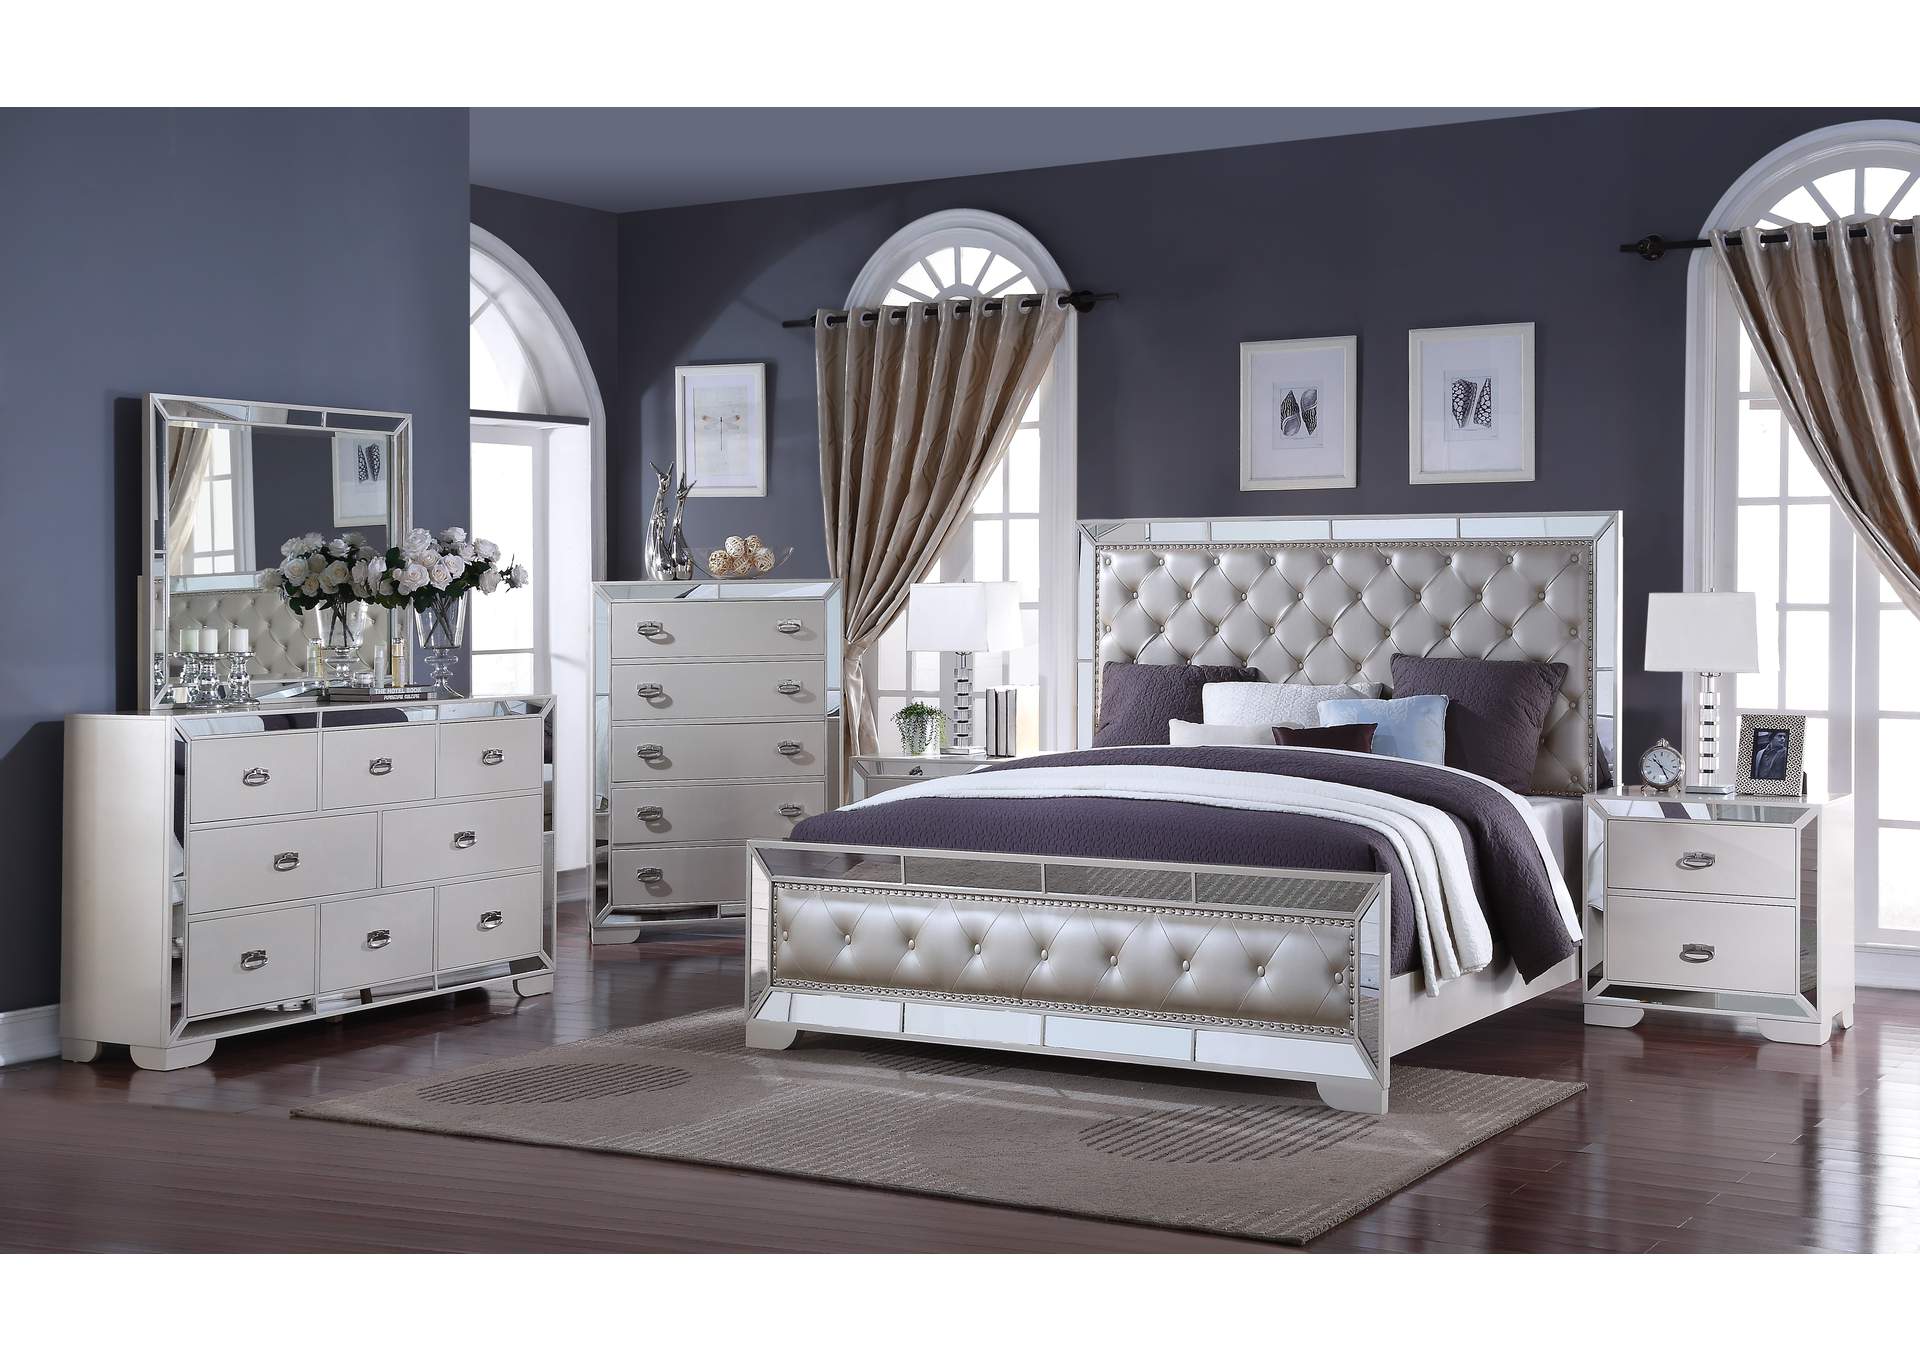 Gloria White Queen Bedroom Set - Bed, Dresser, Mirror, 2 Nightstands, Chest,Cosmos Furniture